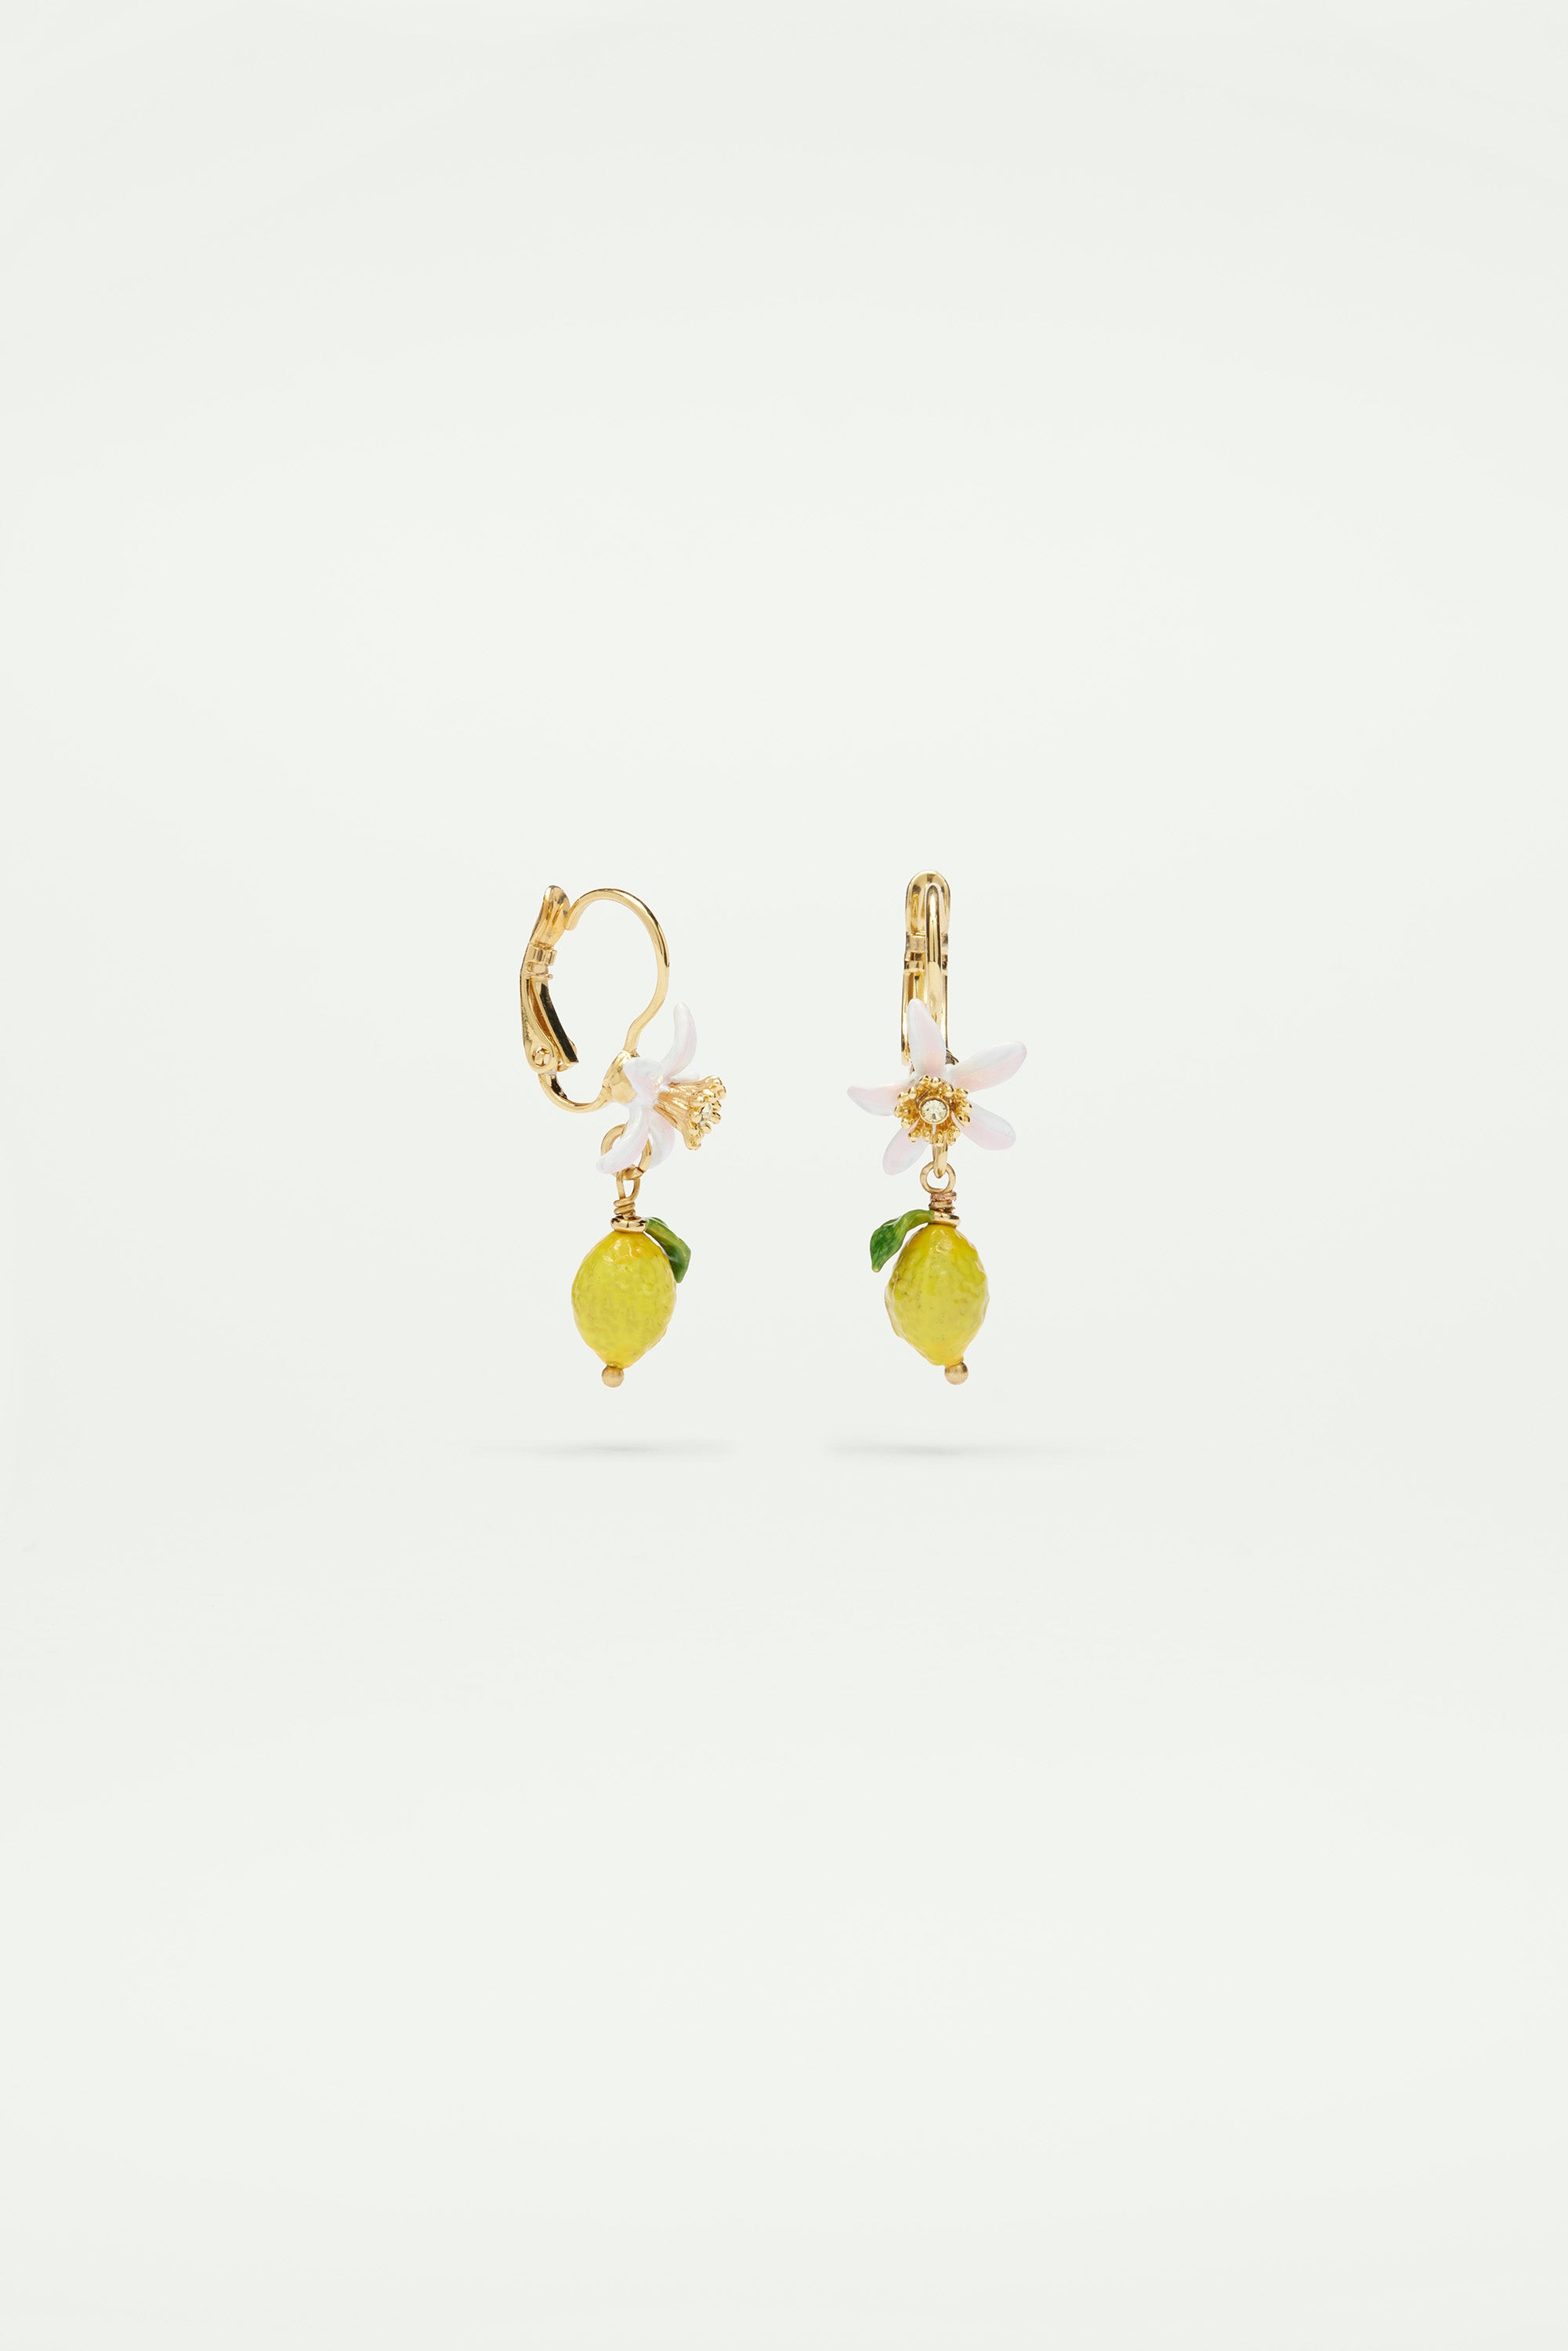 Lemon and white flower sleeper earrings